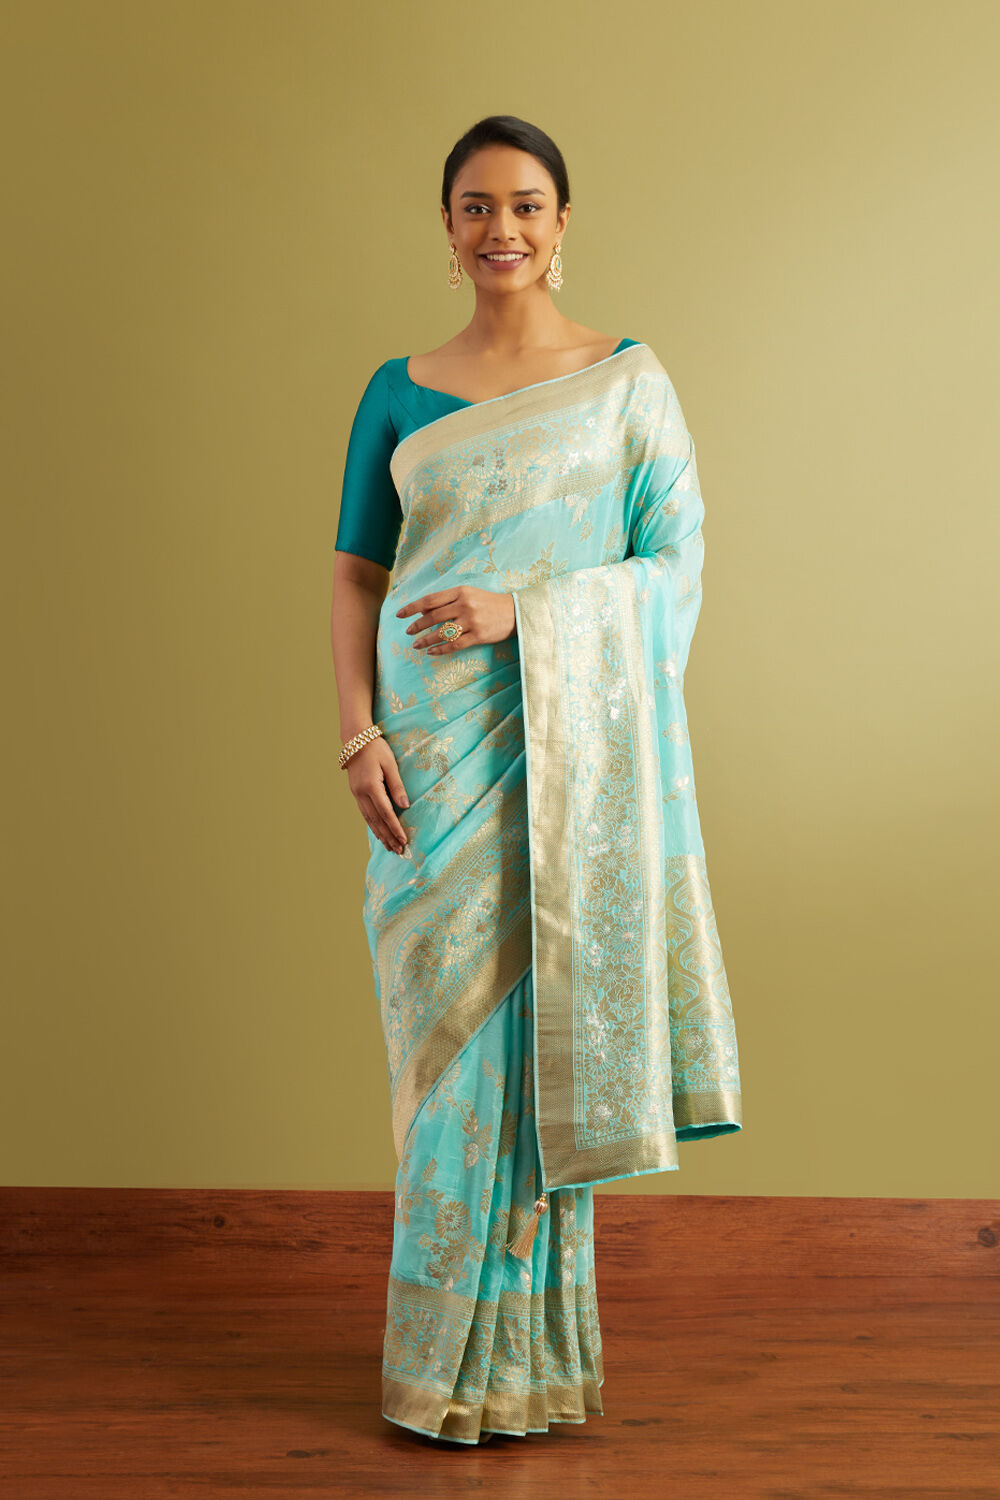 Taneira: A home for India's saree traditions - Rediff.com